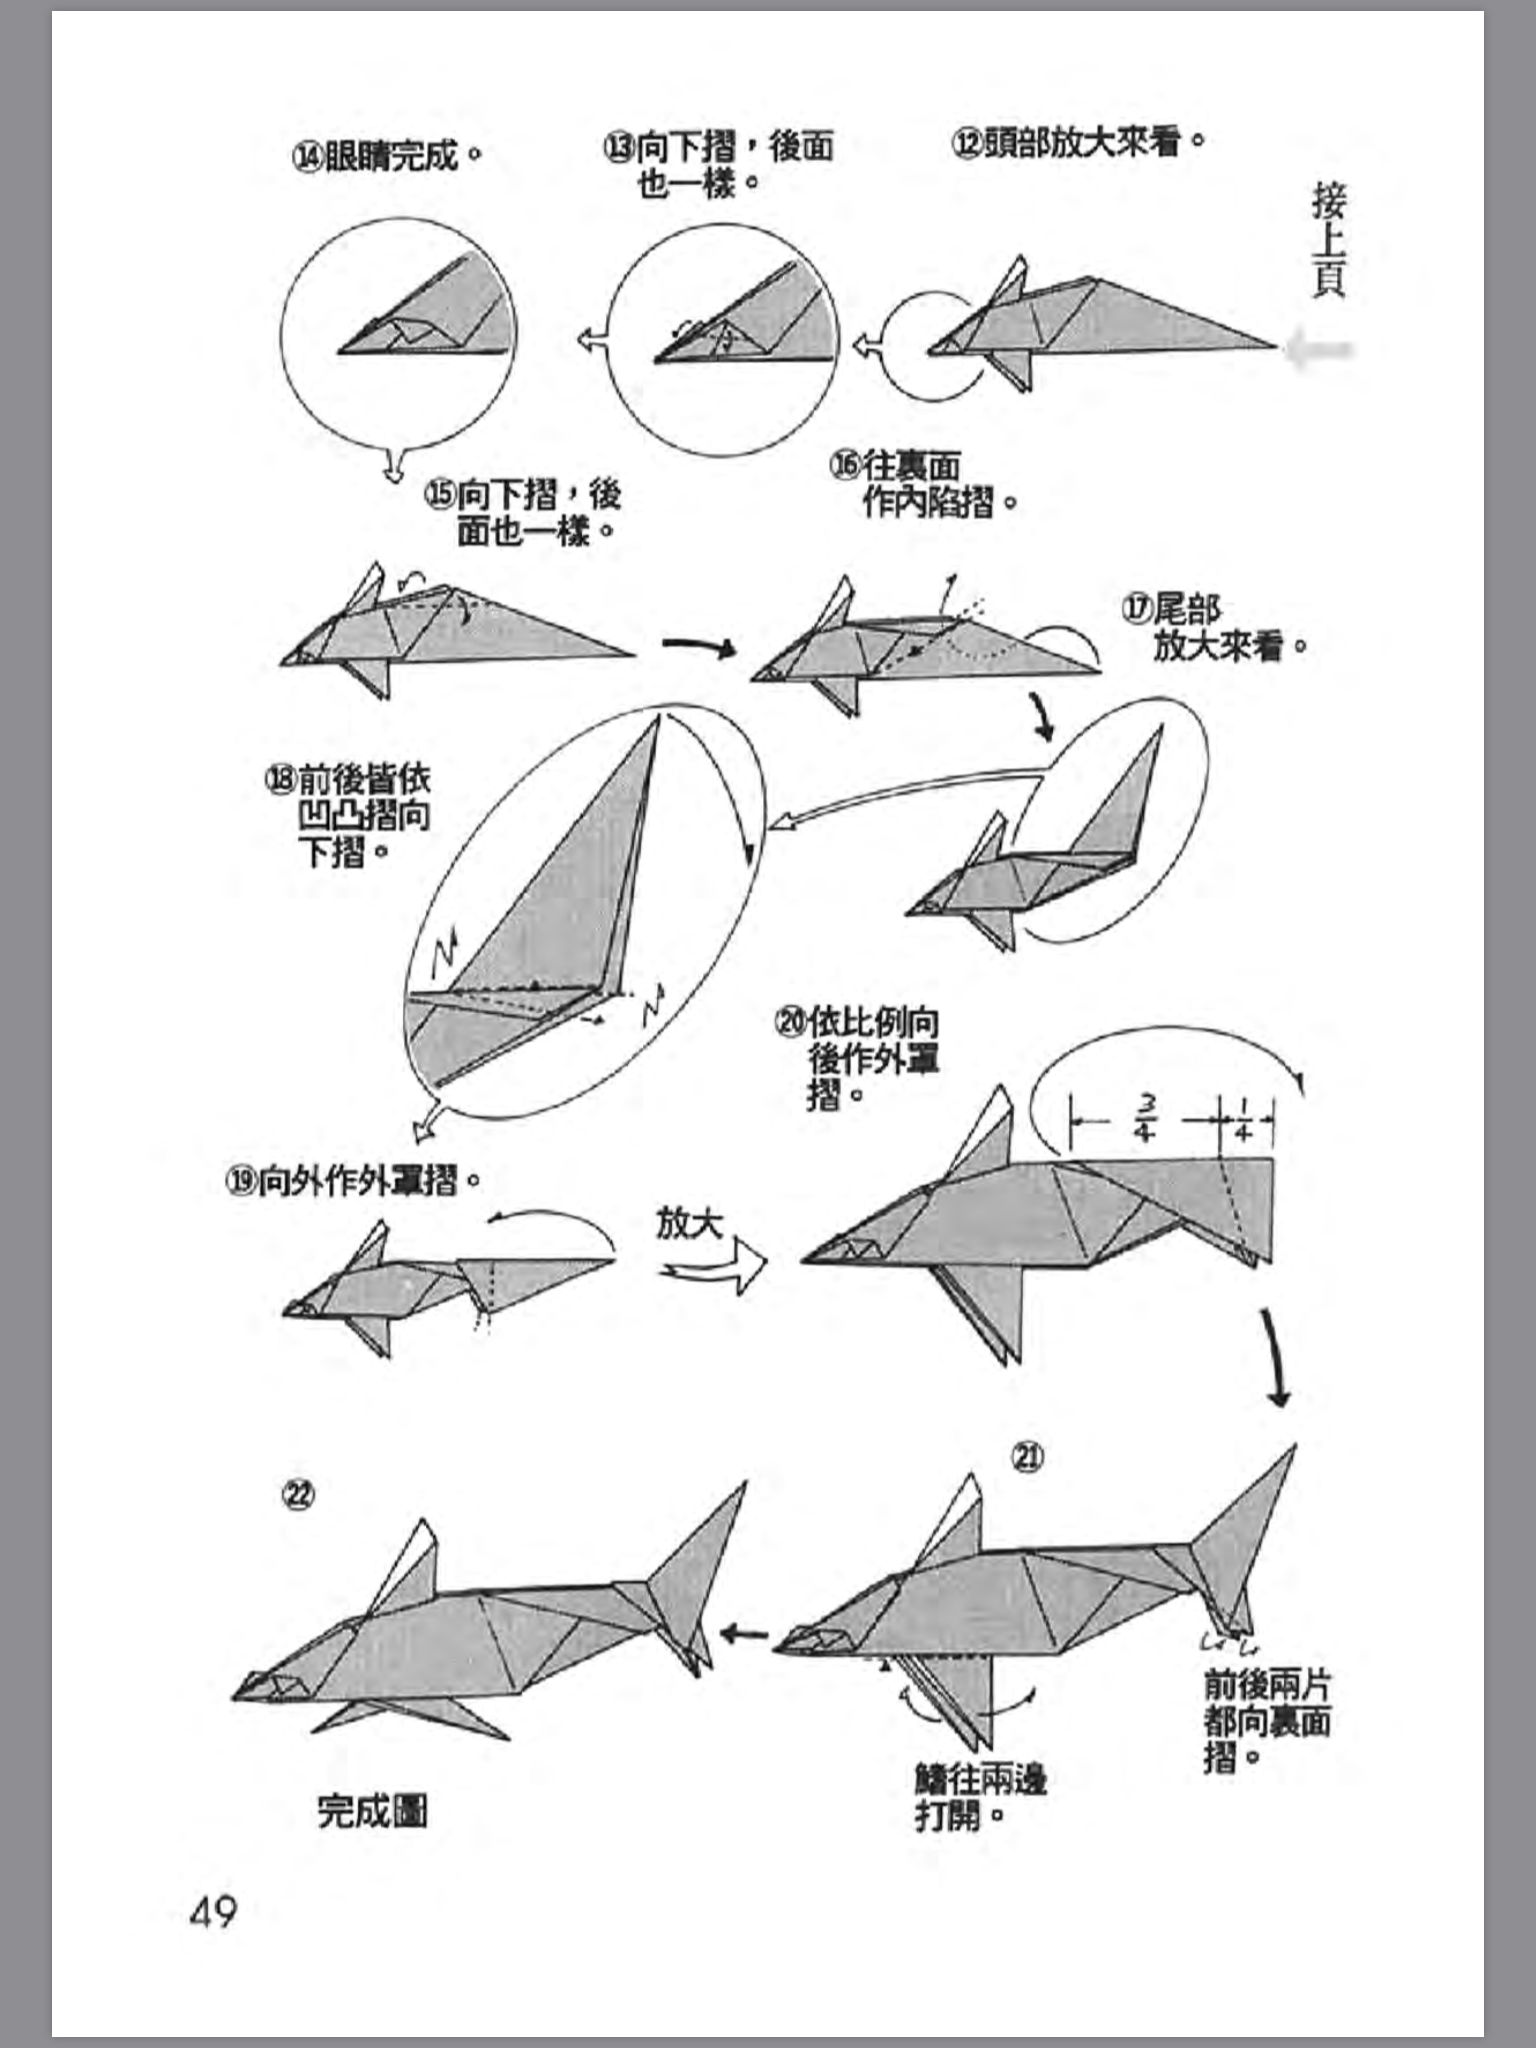 折纸战士之折纸宝典1分享(5)(战斗机 飞碟 鲨鱼)